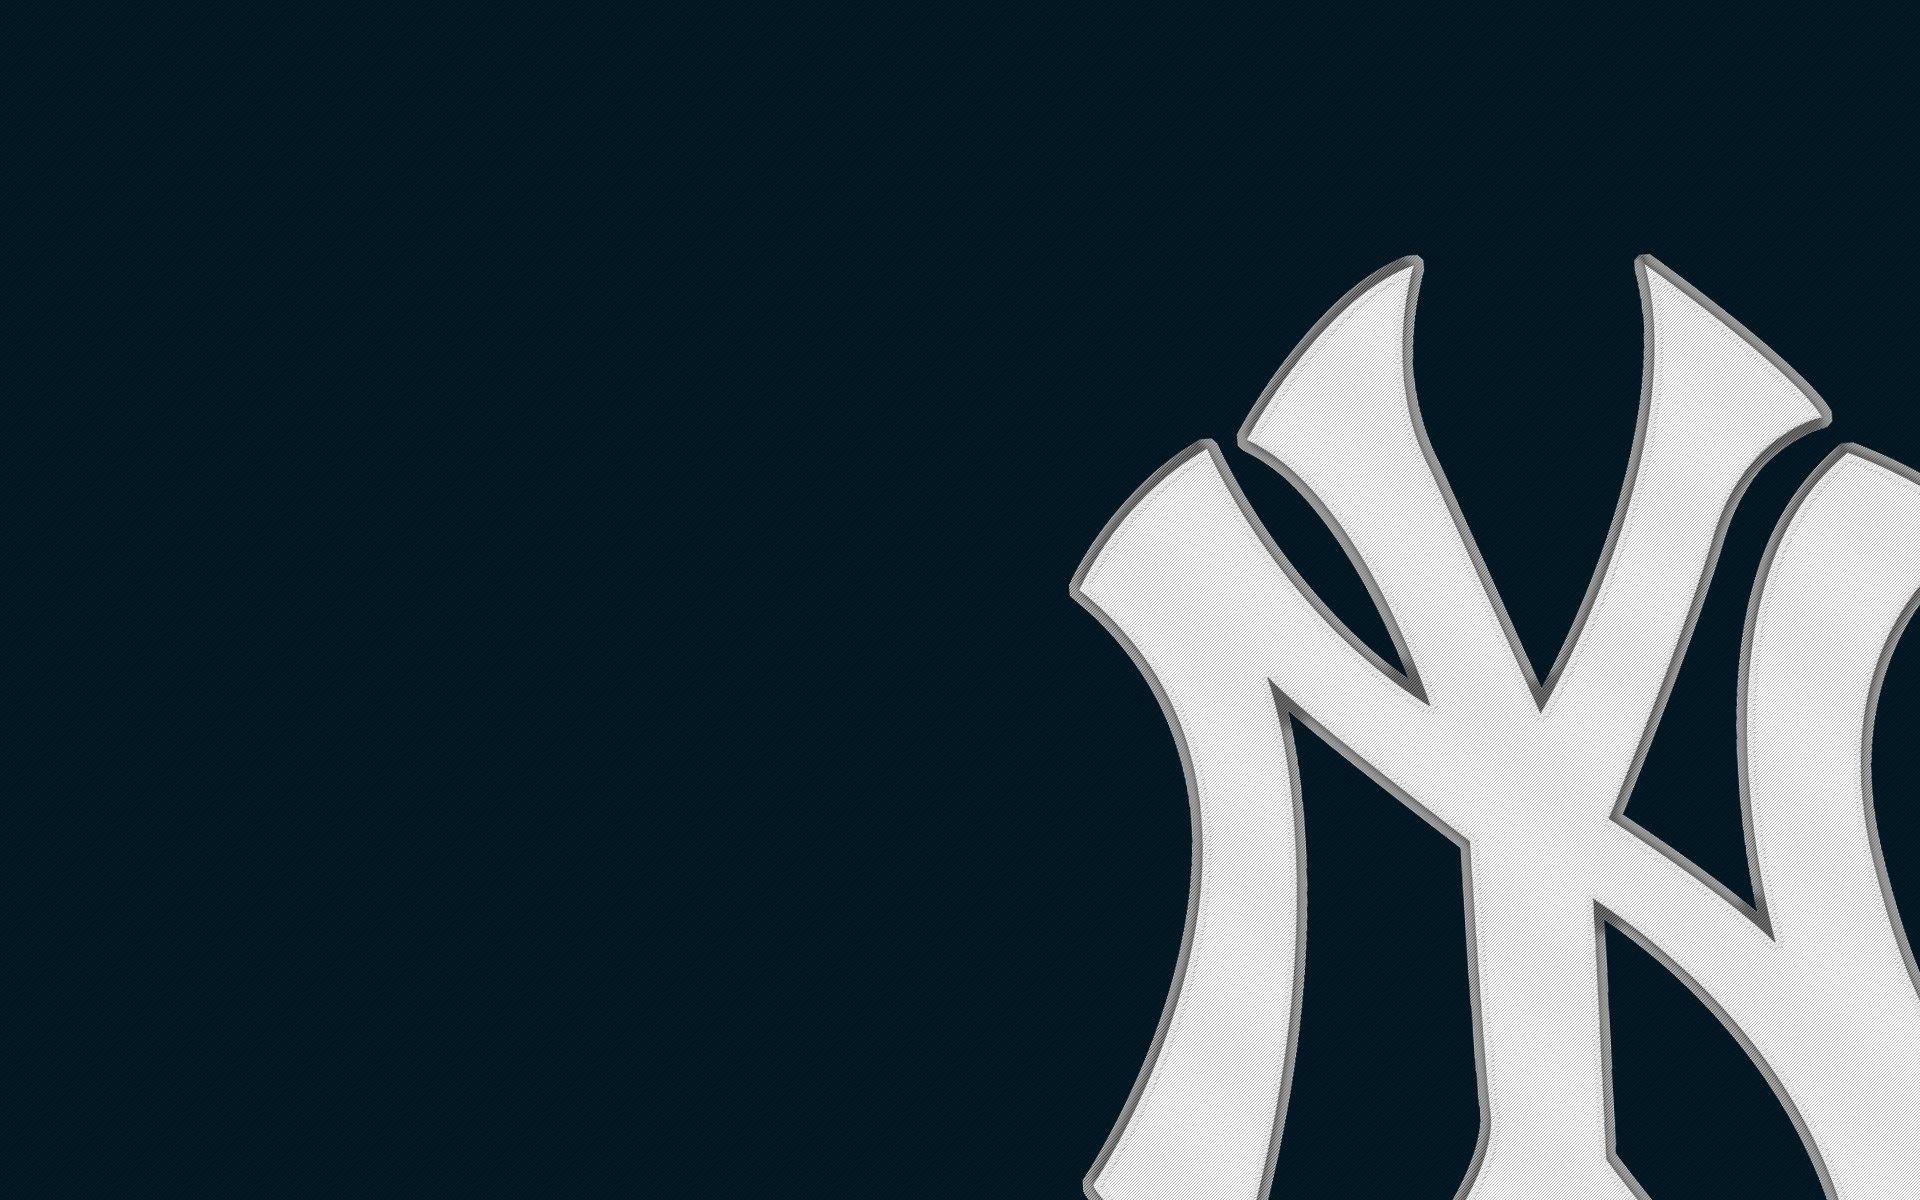 HD wallpaper: skulls wearing New York Yankees caps digital wallpaper, sake